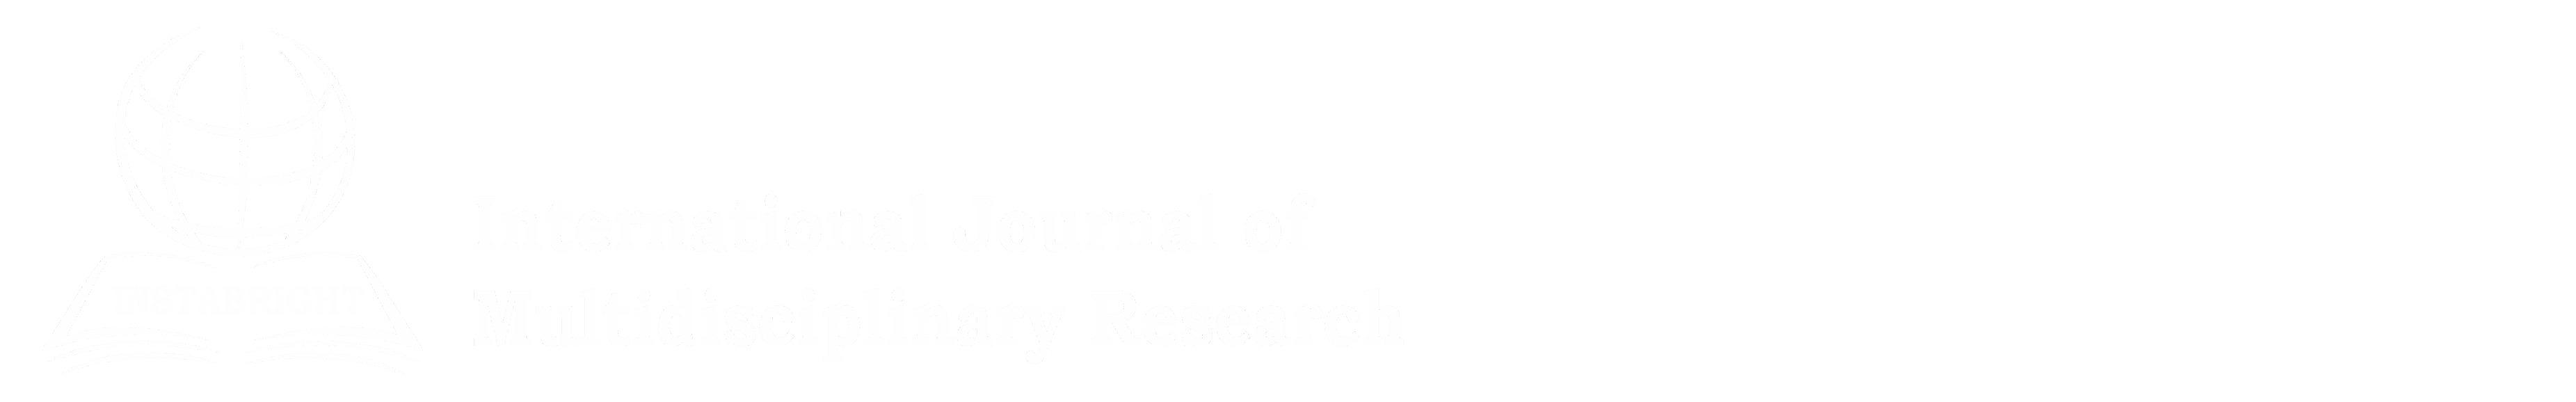 Instabright International Journal of Multidisciplinary Research